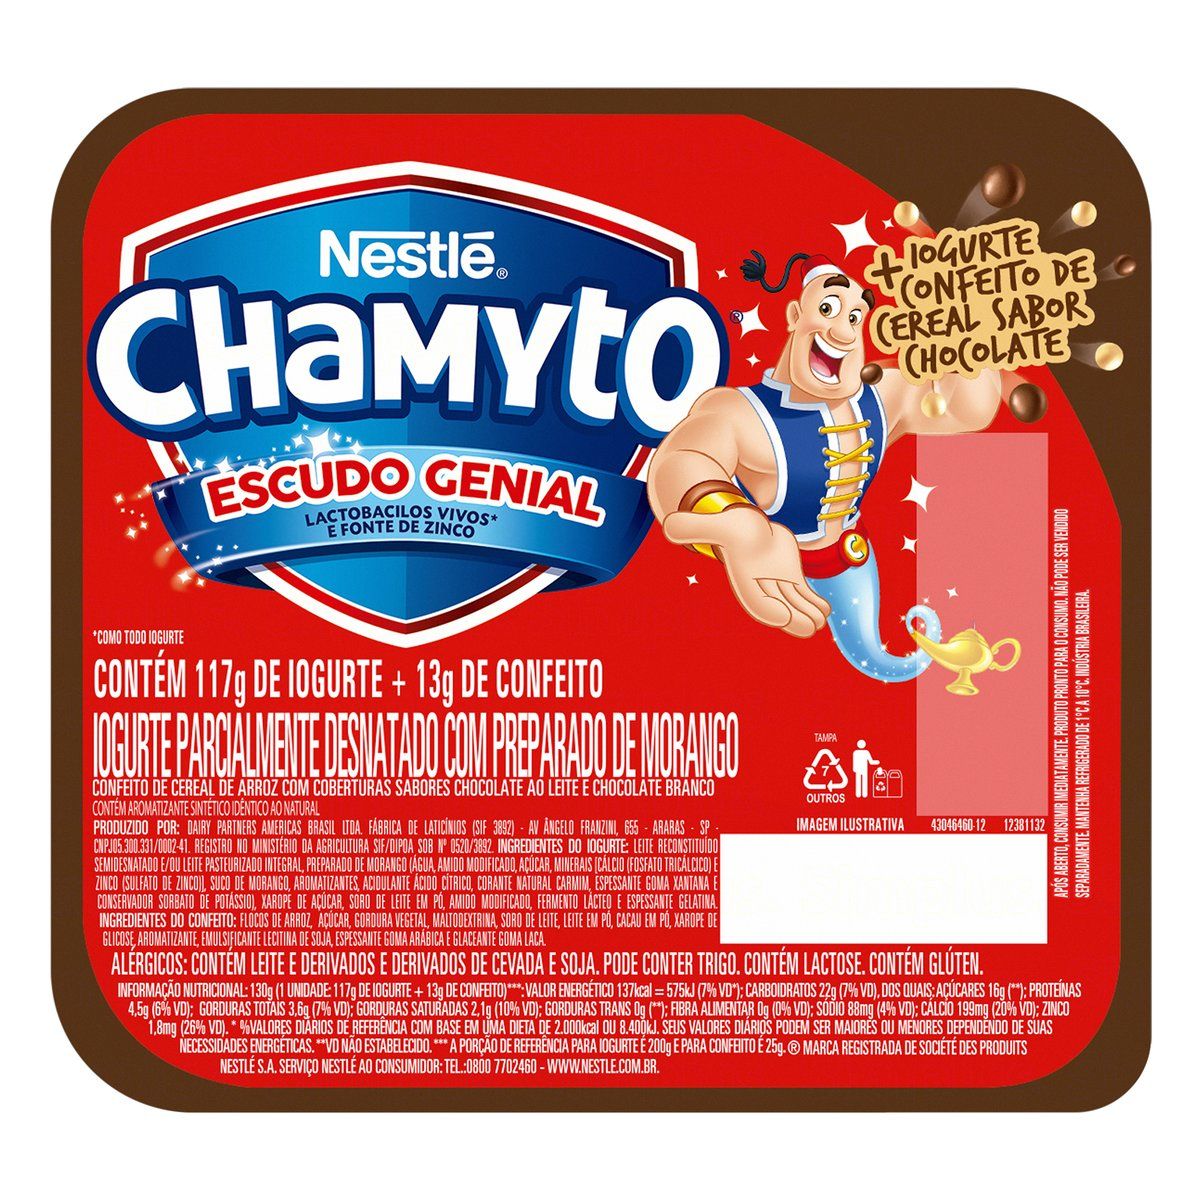 Iogurte Chamyto Parcialmente Desnatado Morango com Cereais de Chocolate 130g